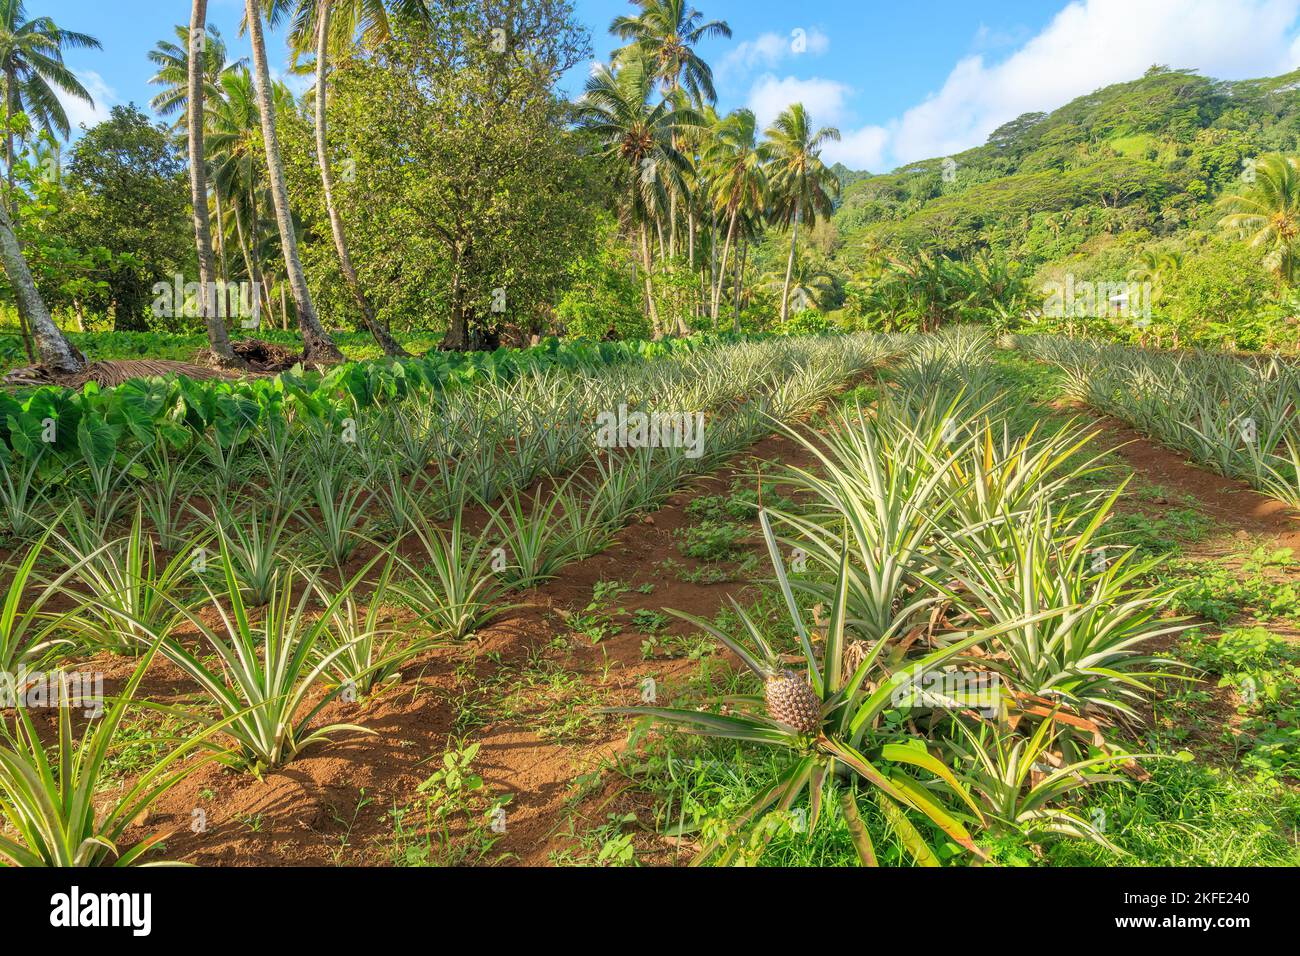 Giovani piante di ananas che crescono in una piantagione sull'isola tropicale di Rarotonga, Isole Cook Foto Stock